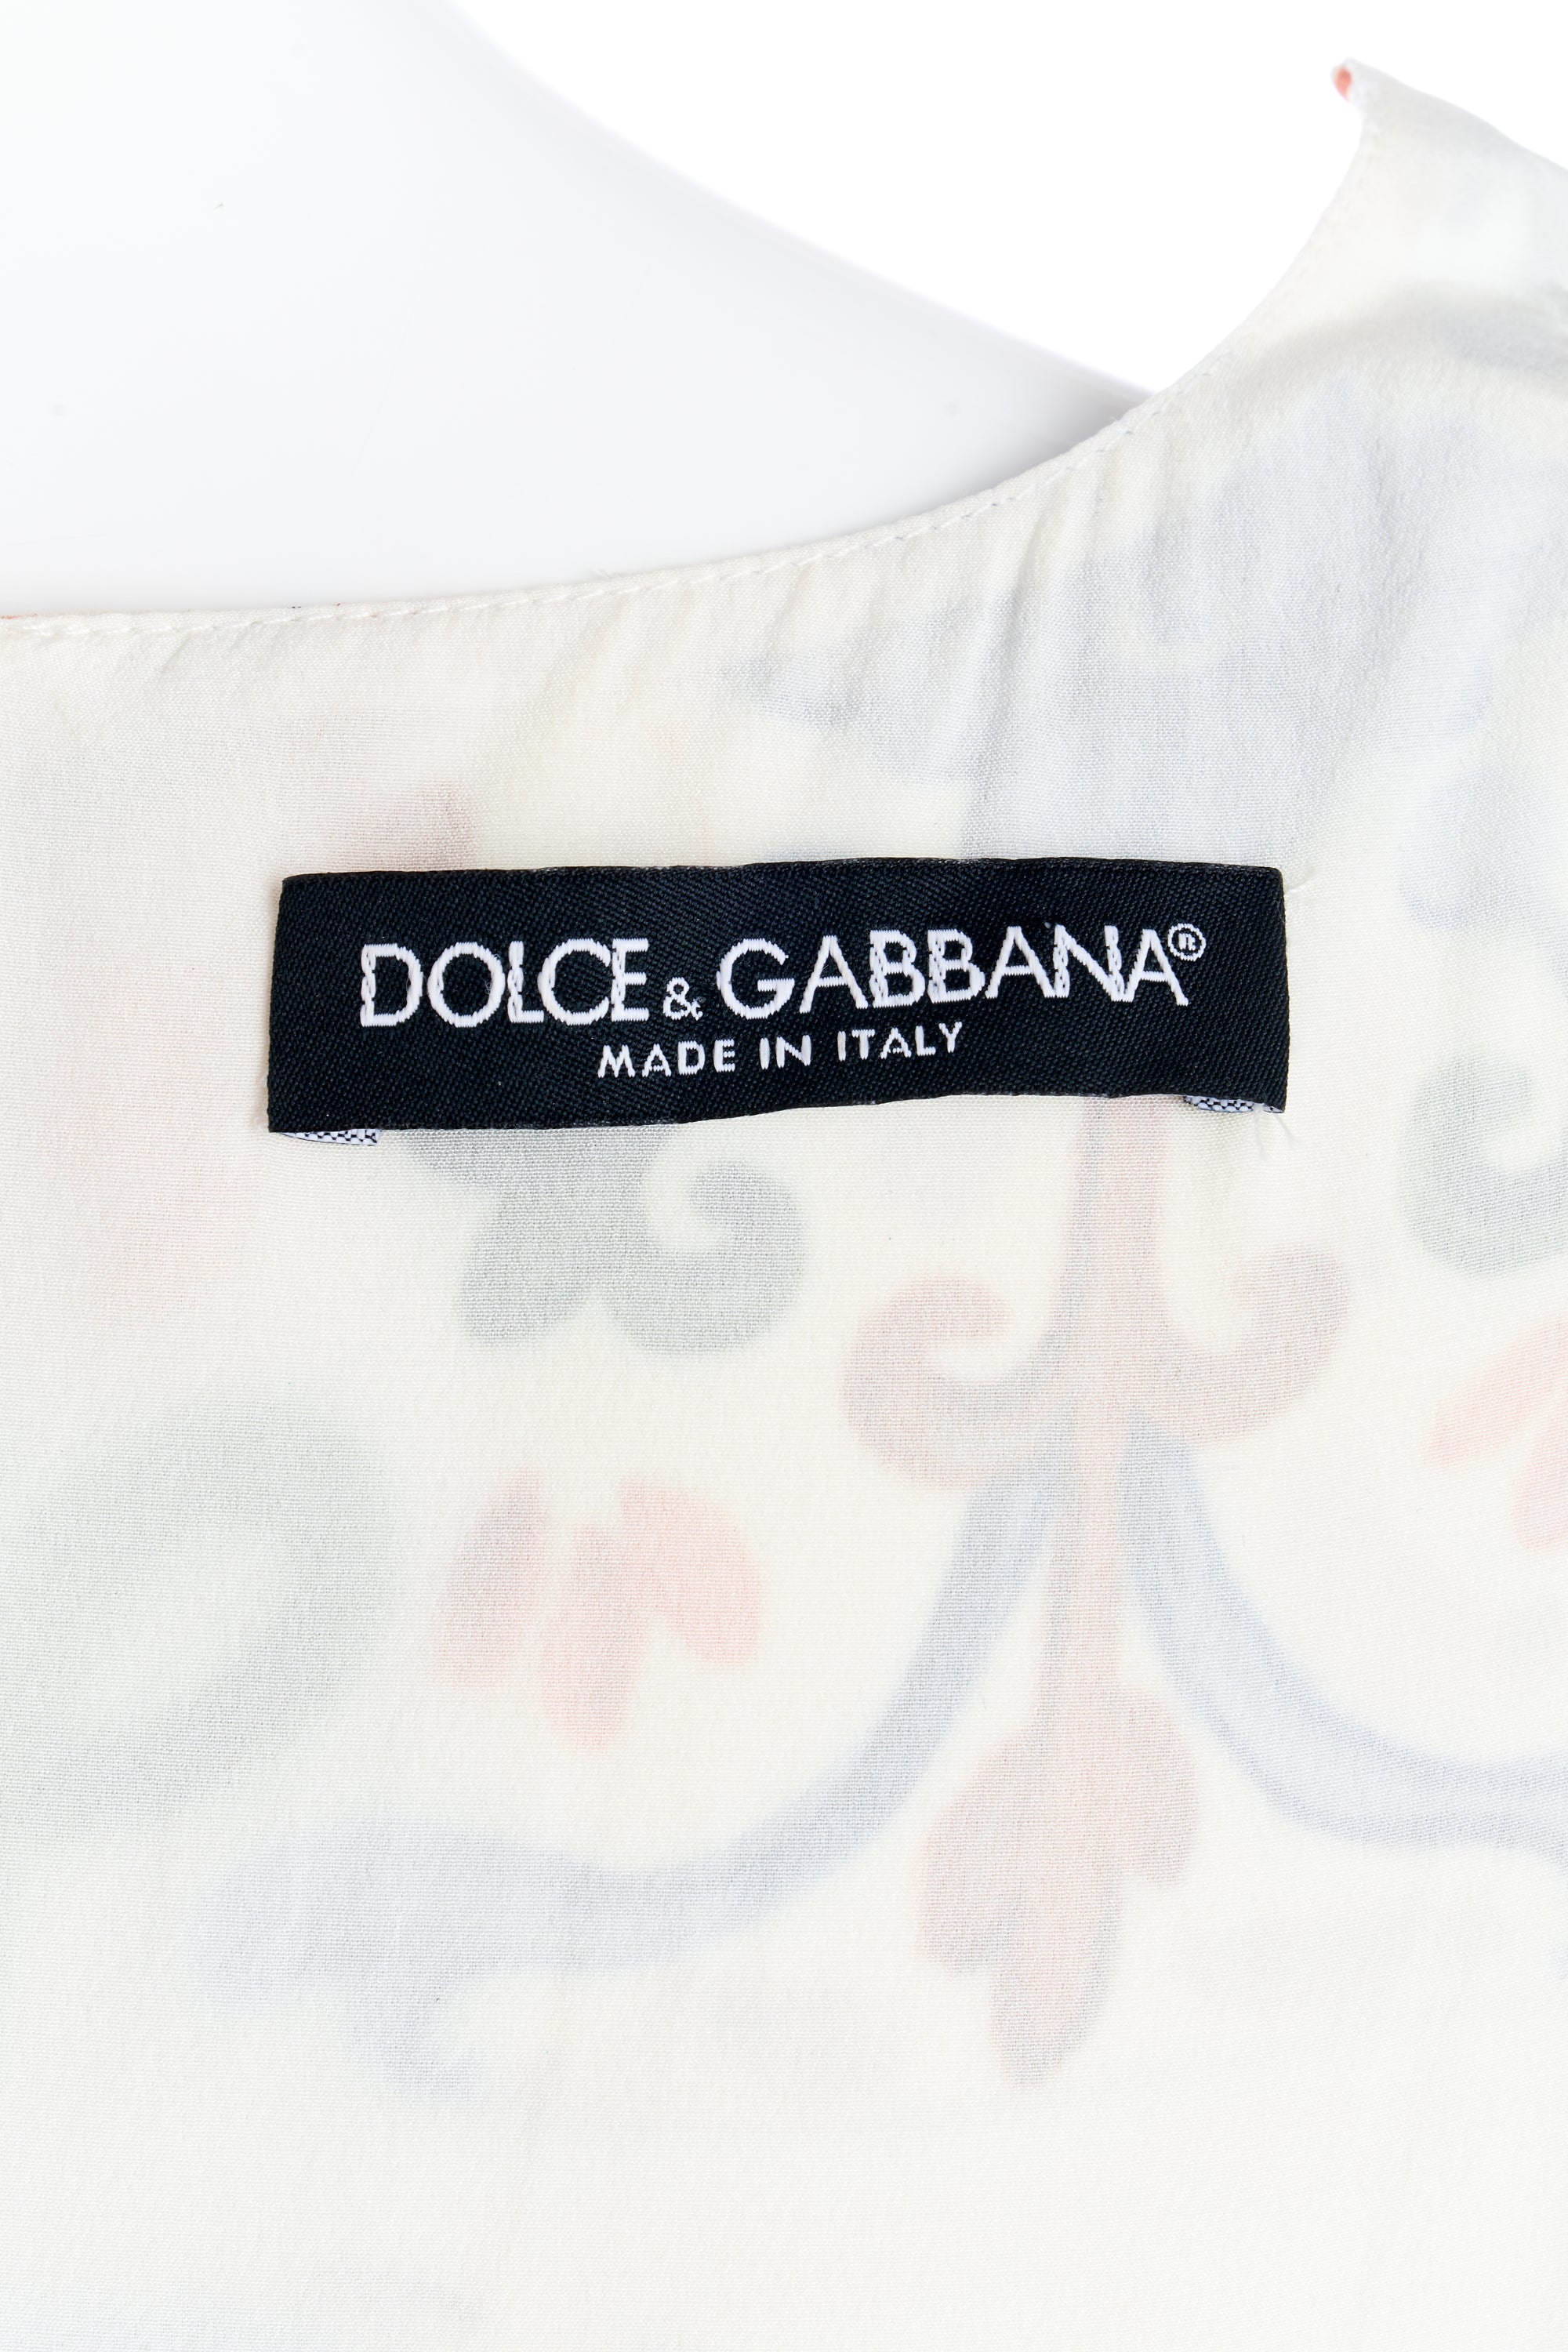 Dolce & Gabbana Lemon Sicily Dress Size 42